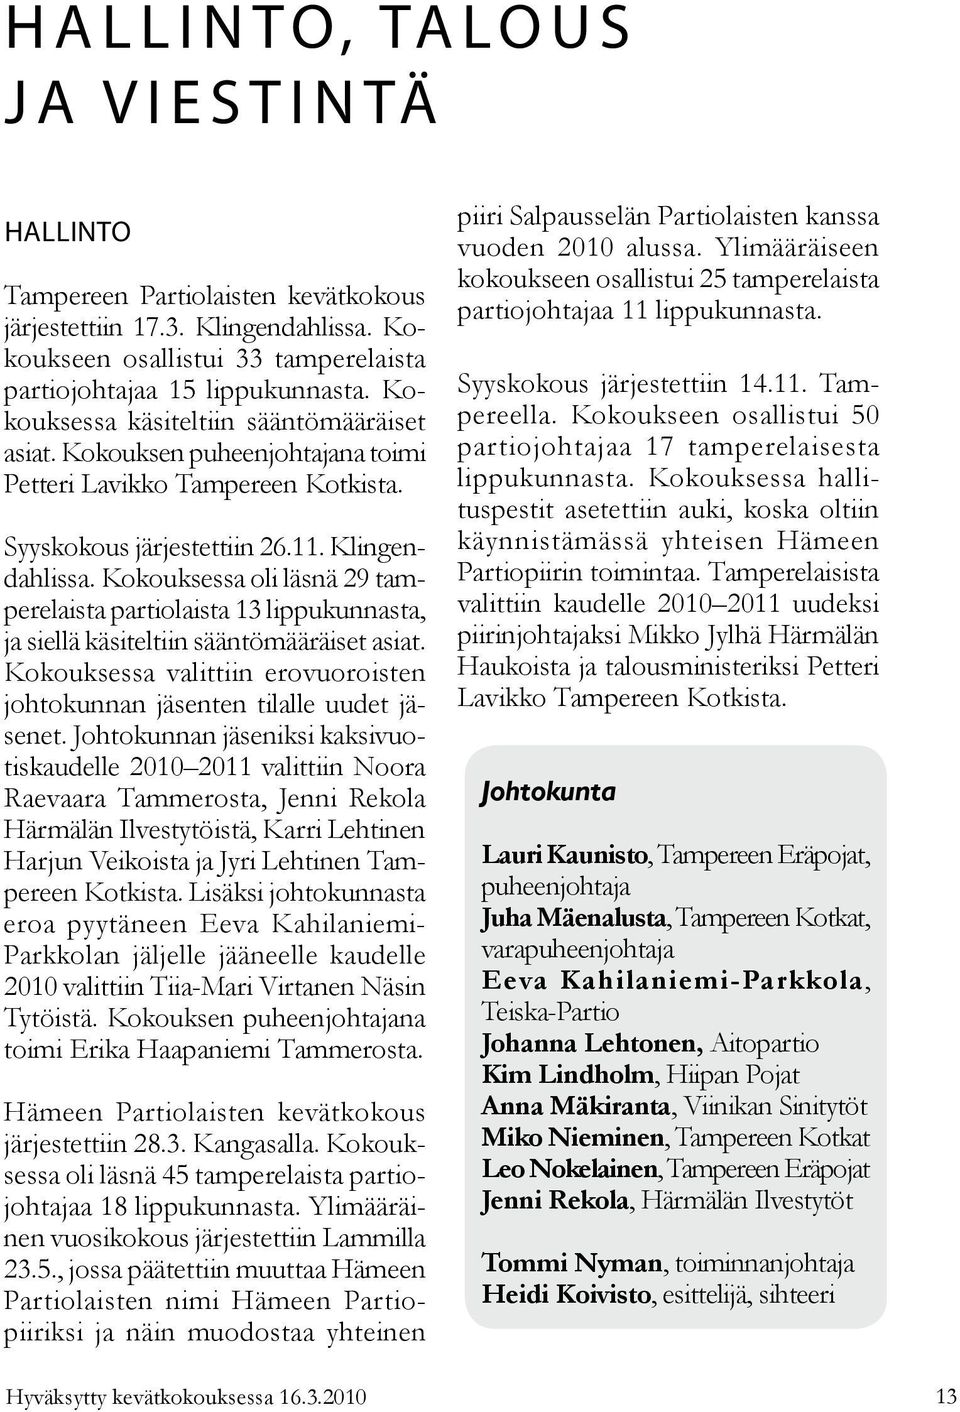 Syyskokous järjestettiin 26.11. Klingendahlissa. Kokouksessa oli läsnä 29 tamperelaista partiolaista 13 lippukunnasta, ja siellä käsiteltiin sääntömääräiset asiat.